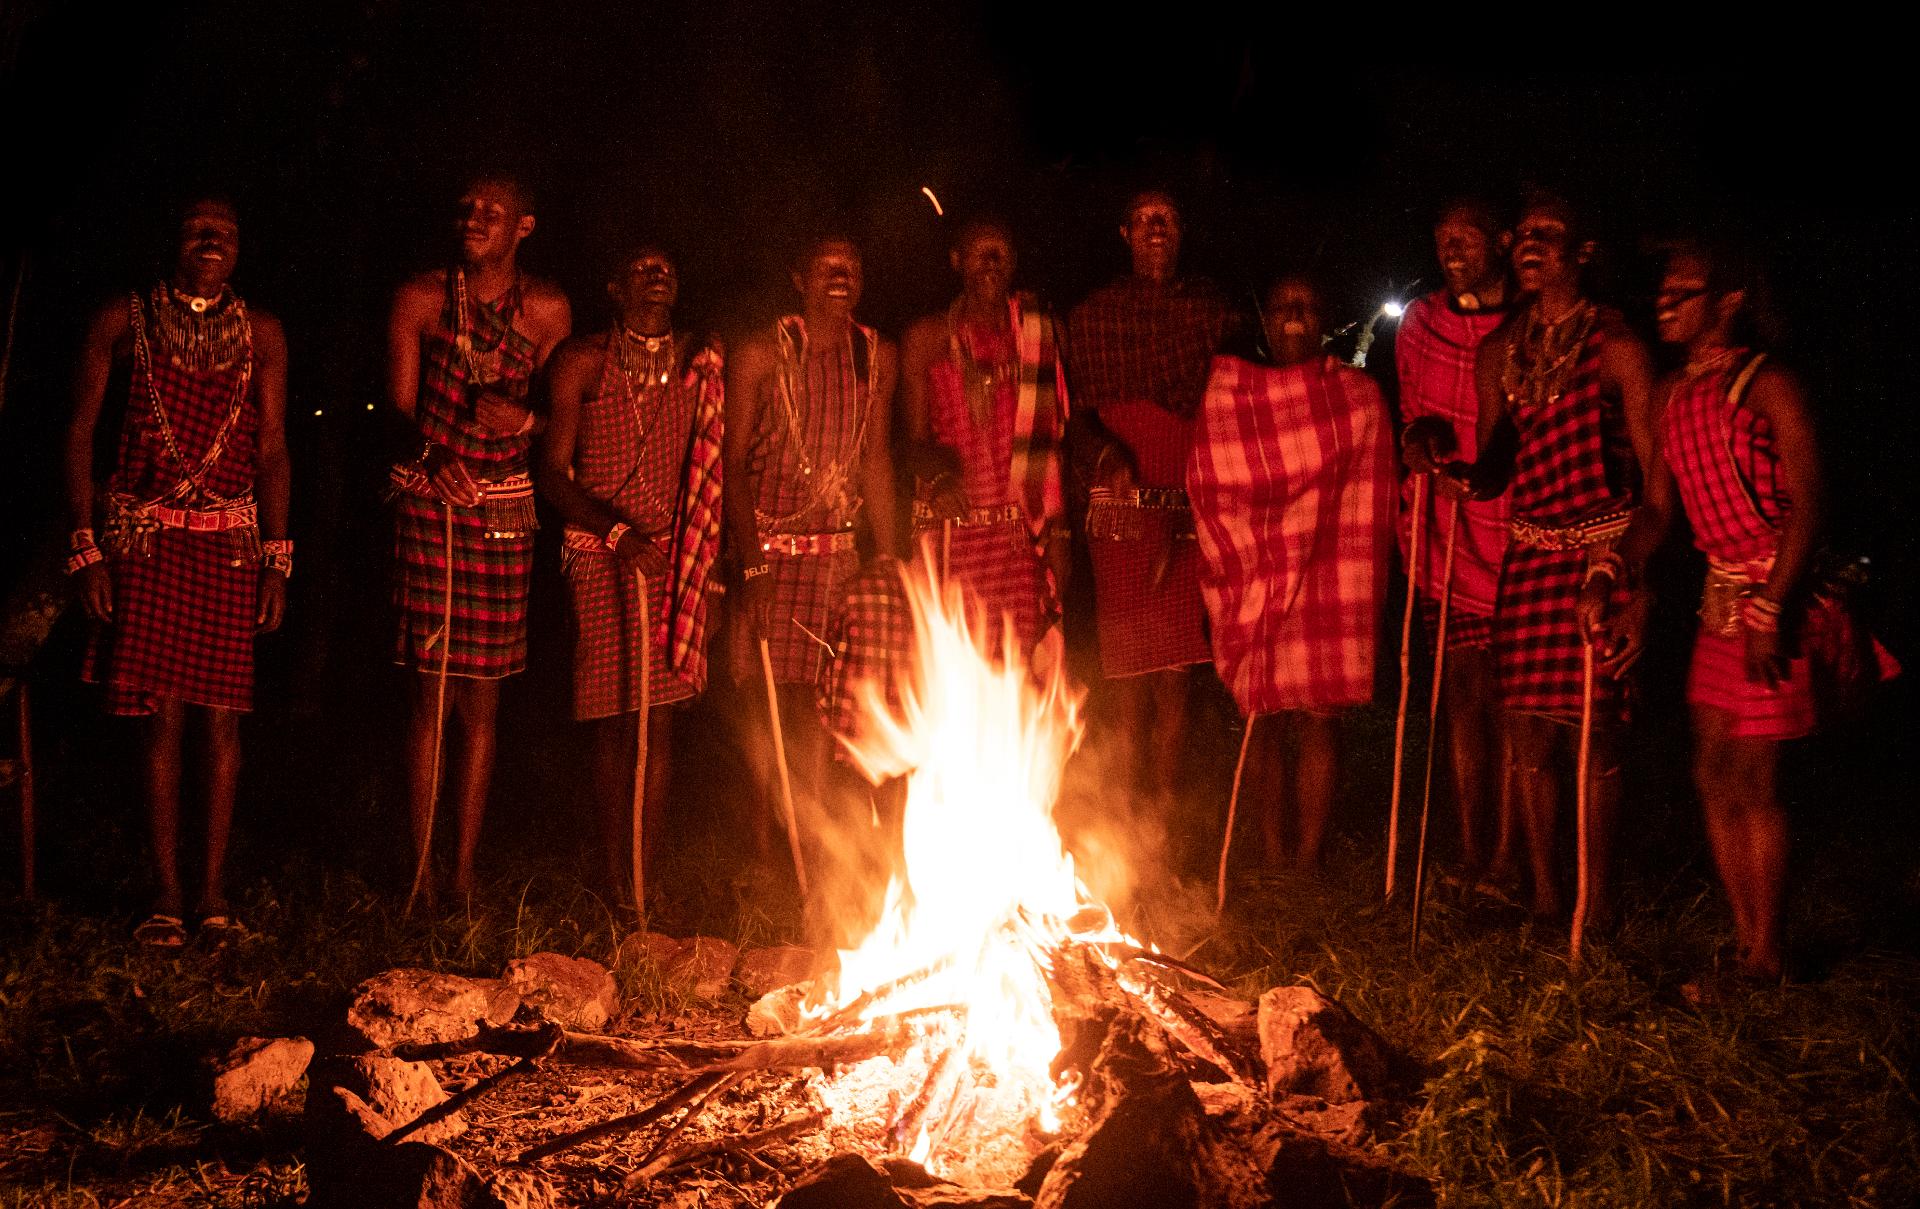 tradicional danza Masai alrededor del fuego